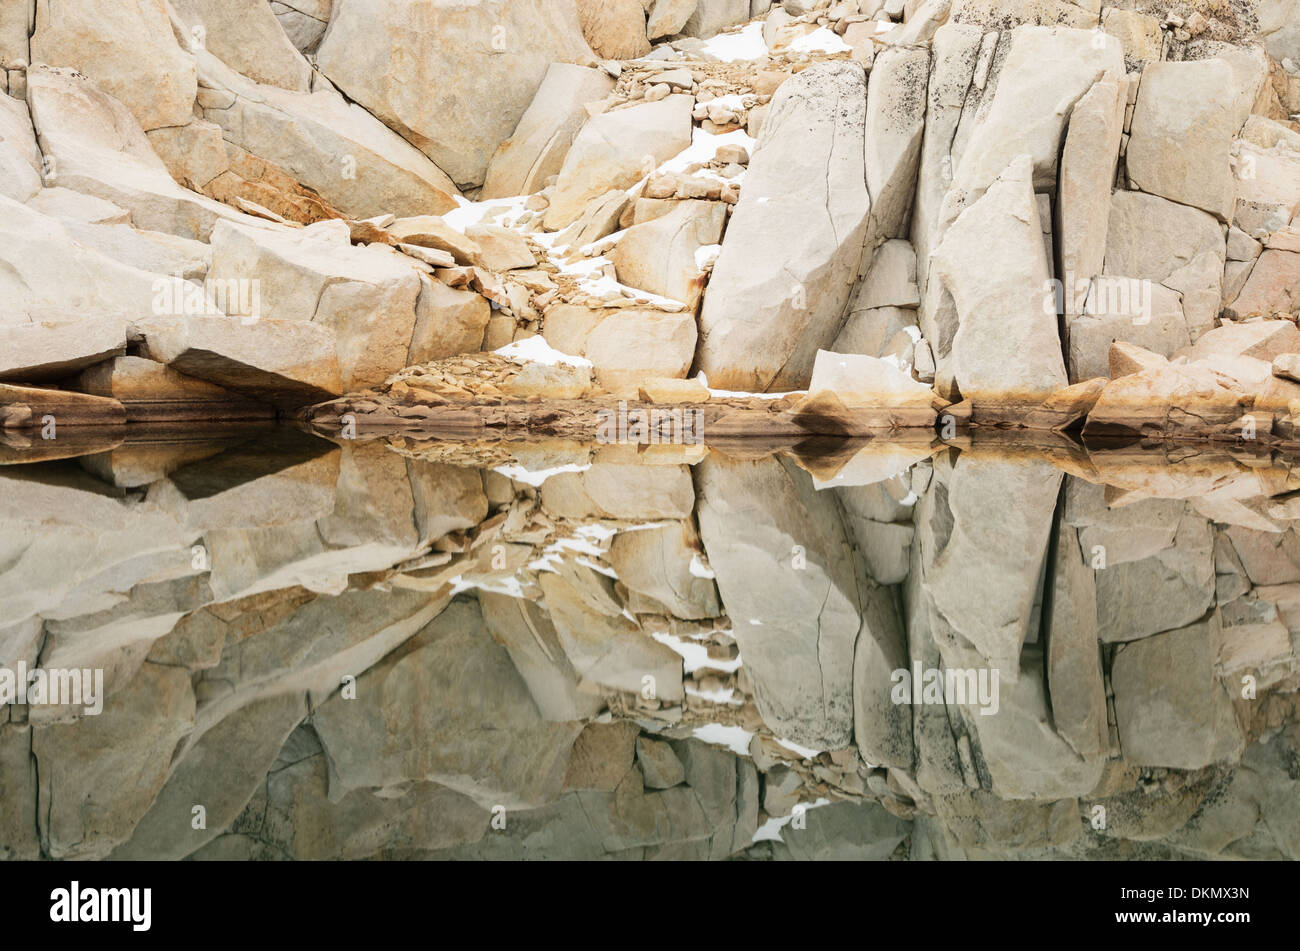 Les roches de granit de la réflexion et de la neige dans un lac de montagne Banque D'Images